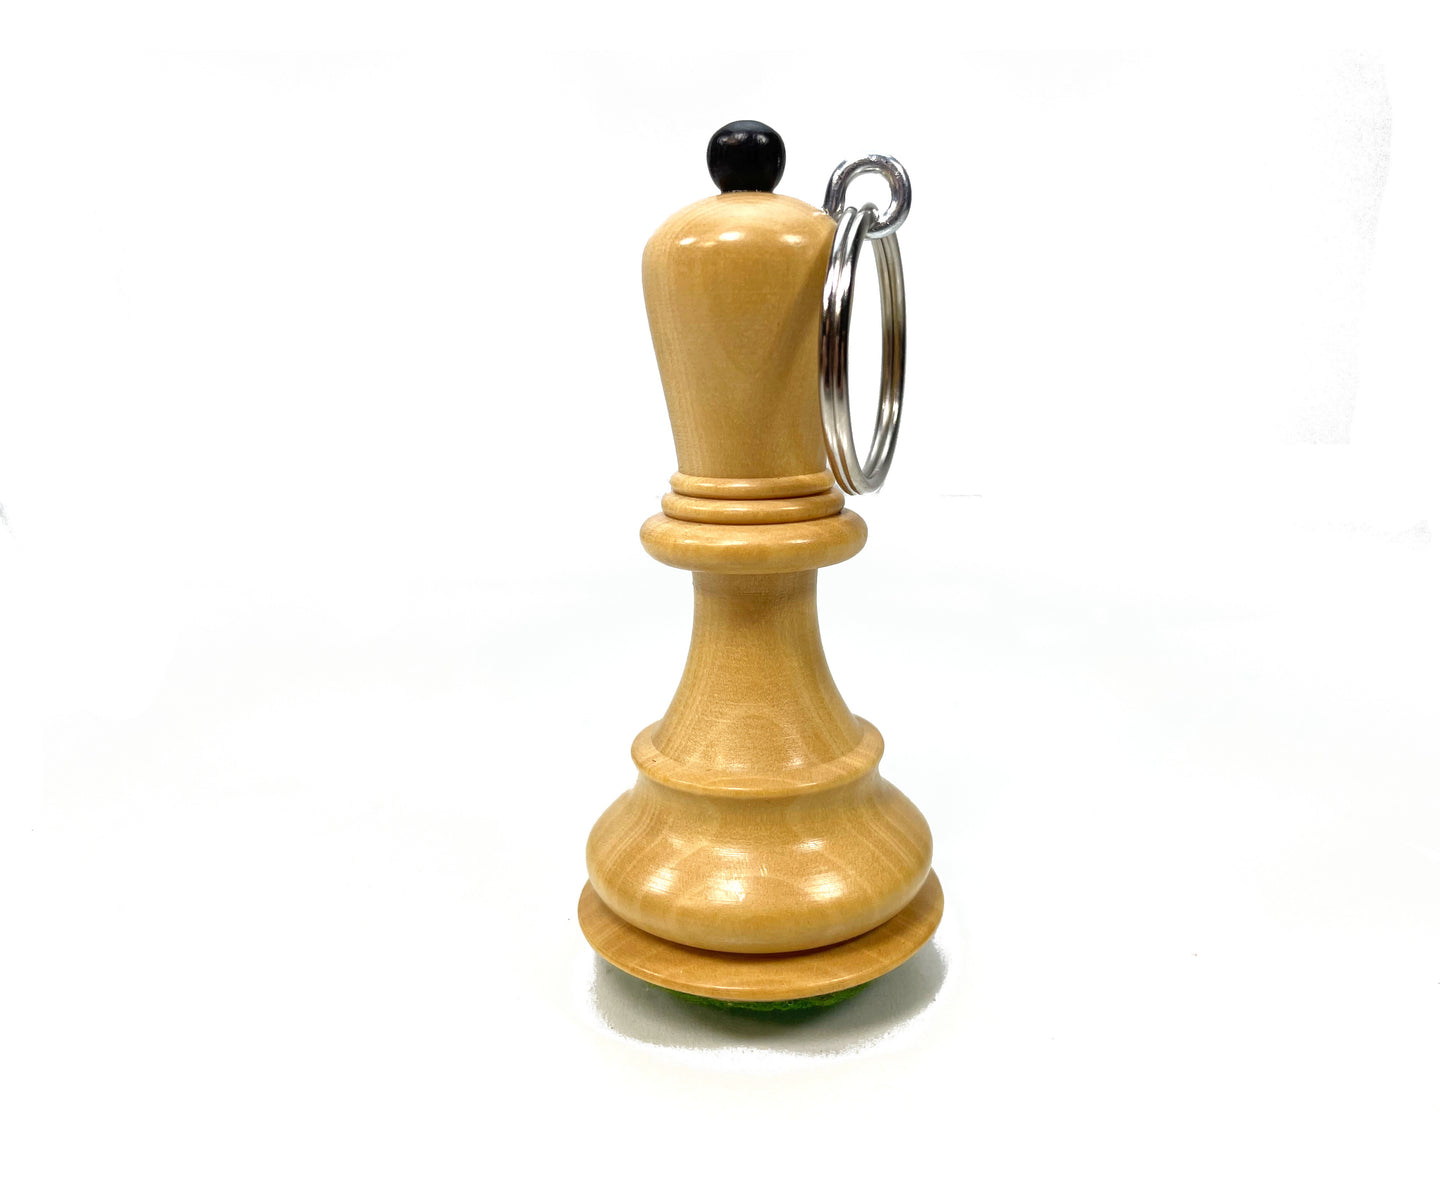 ルーグ ハンドメイド インドの木製実際のチェスフィギュアランナー キーホルダー